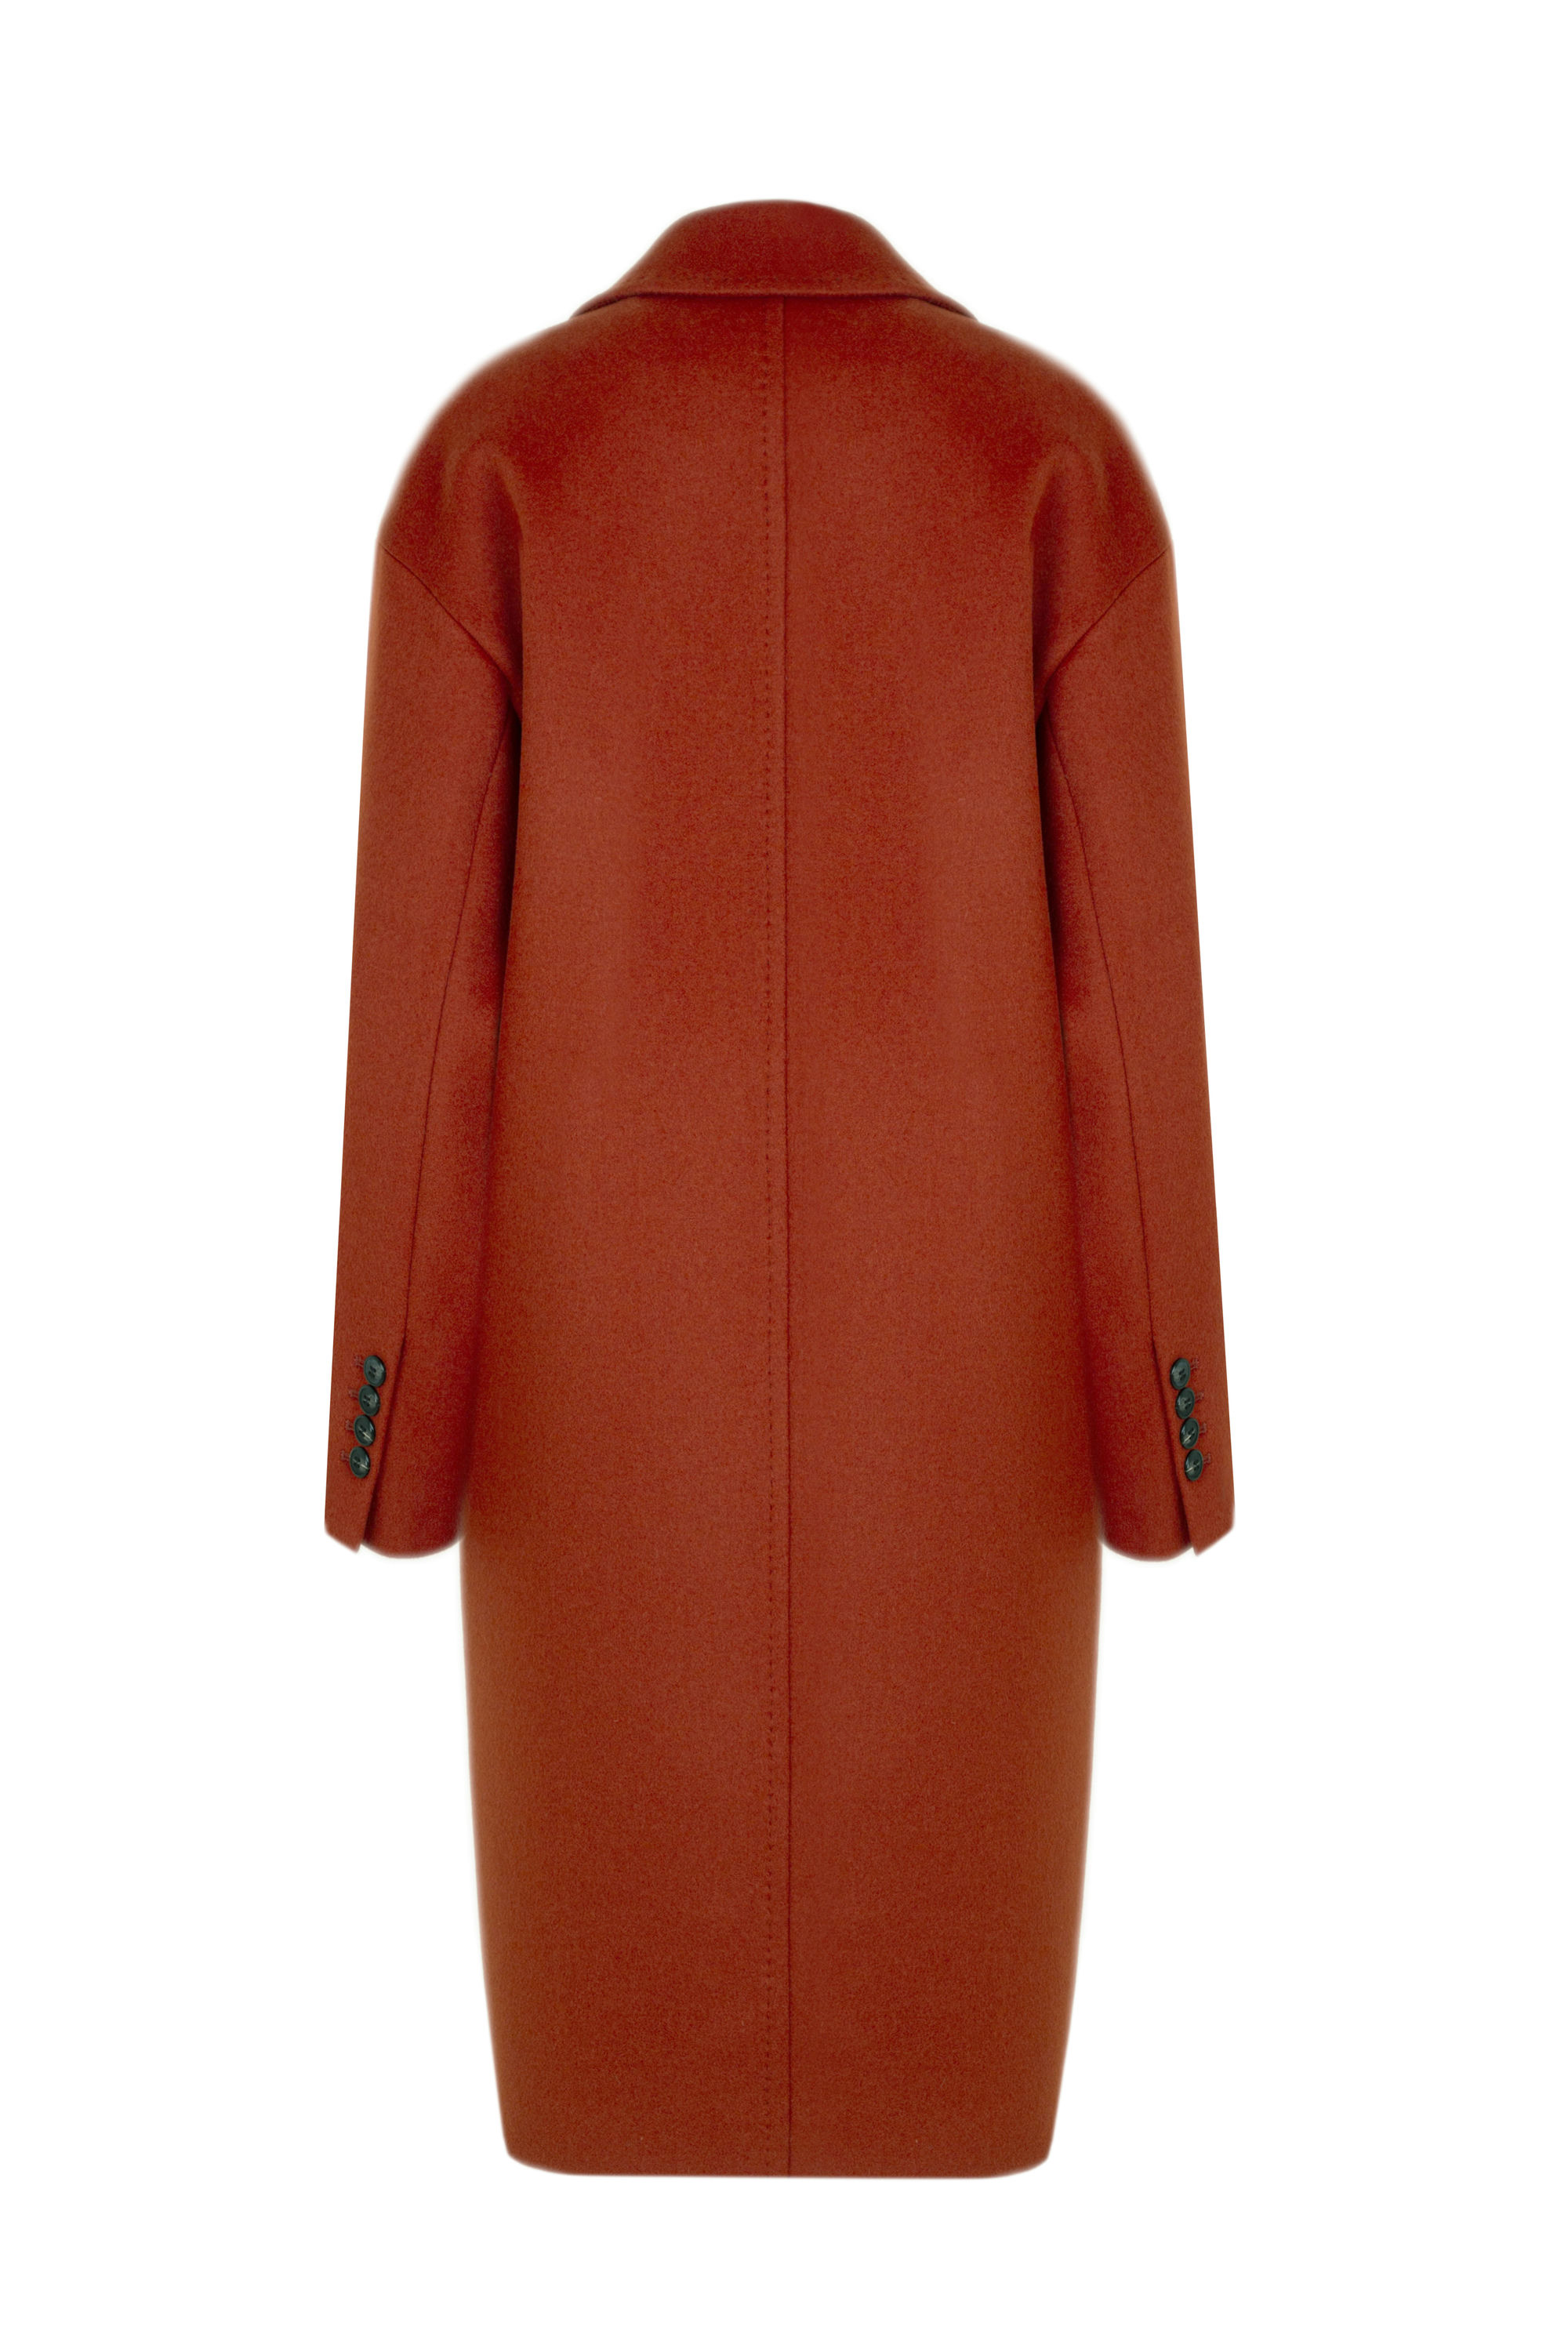 Пальто женское демисезонное 1-13022-1. Фото 3.